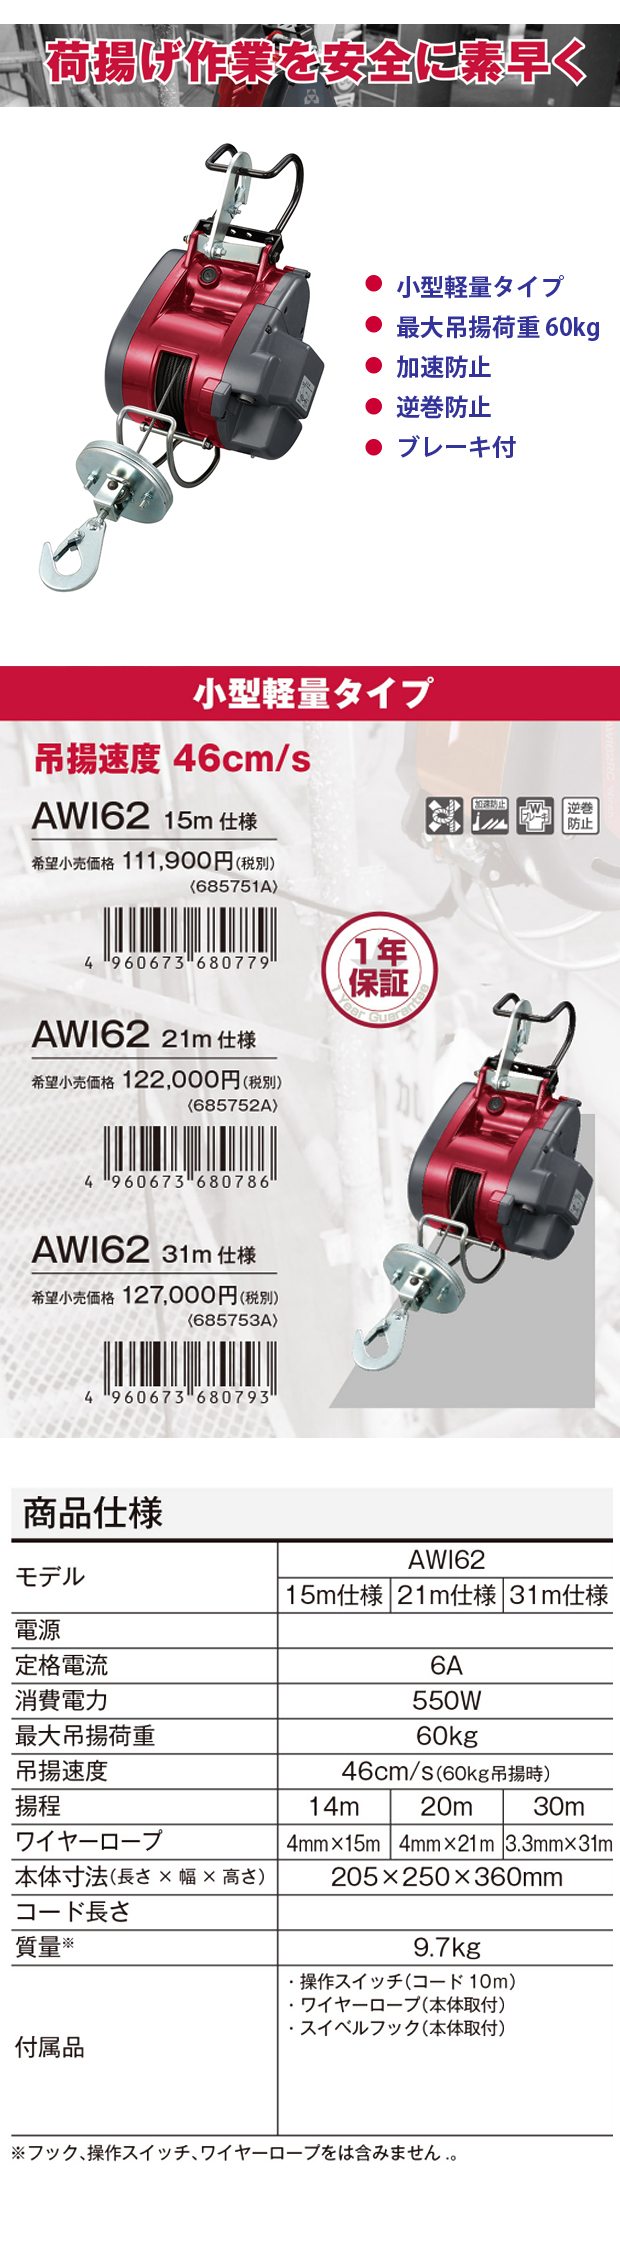 京セラウインチAWI62 電動工具・エアー工具・大工道具（電動工具＞カクハン・バイブレータ・ウインチ）